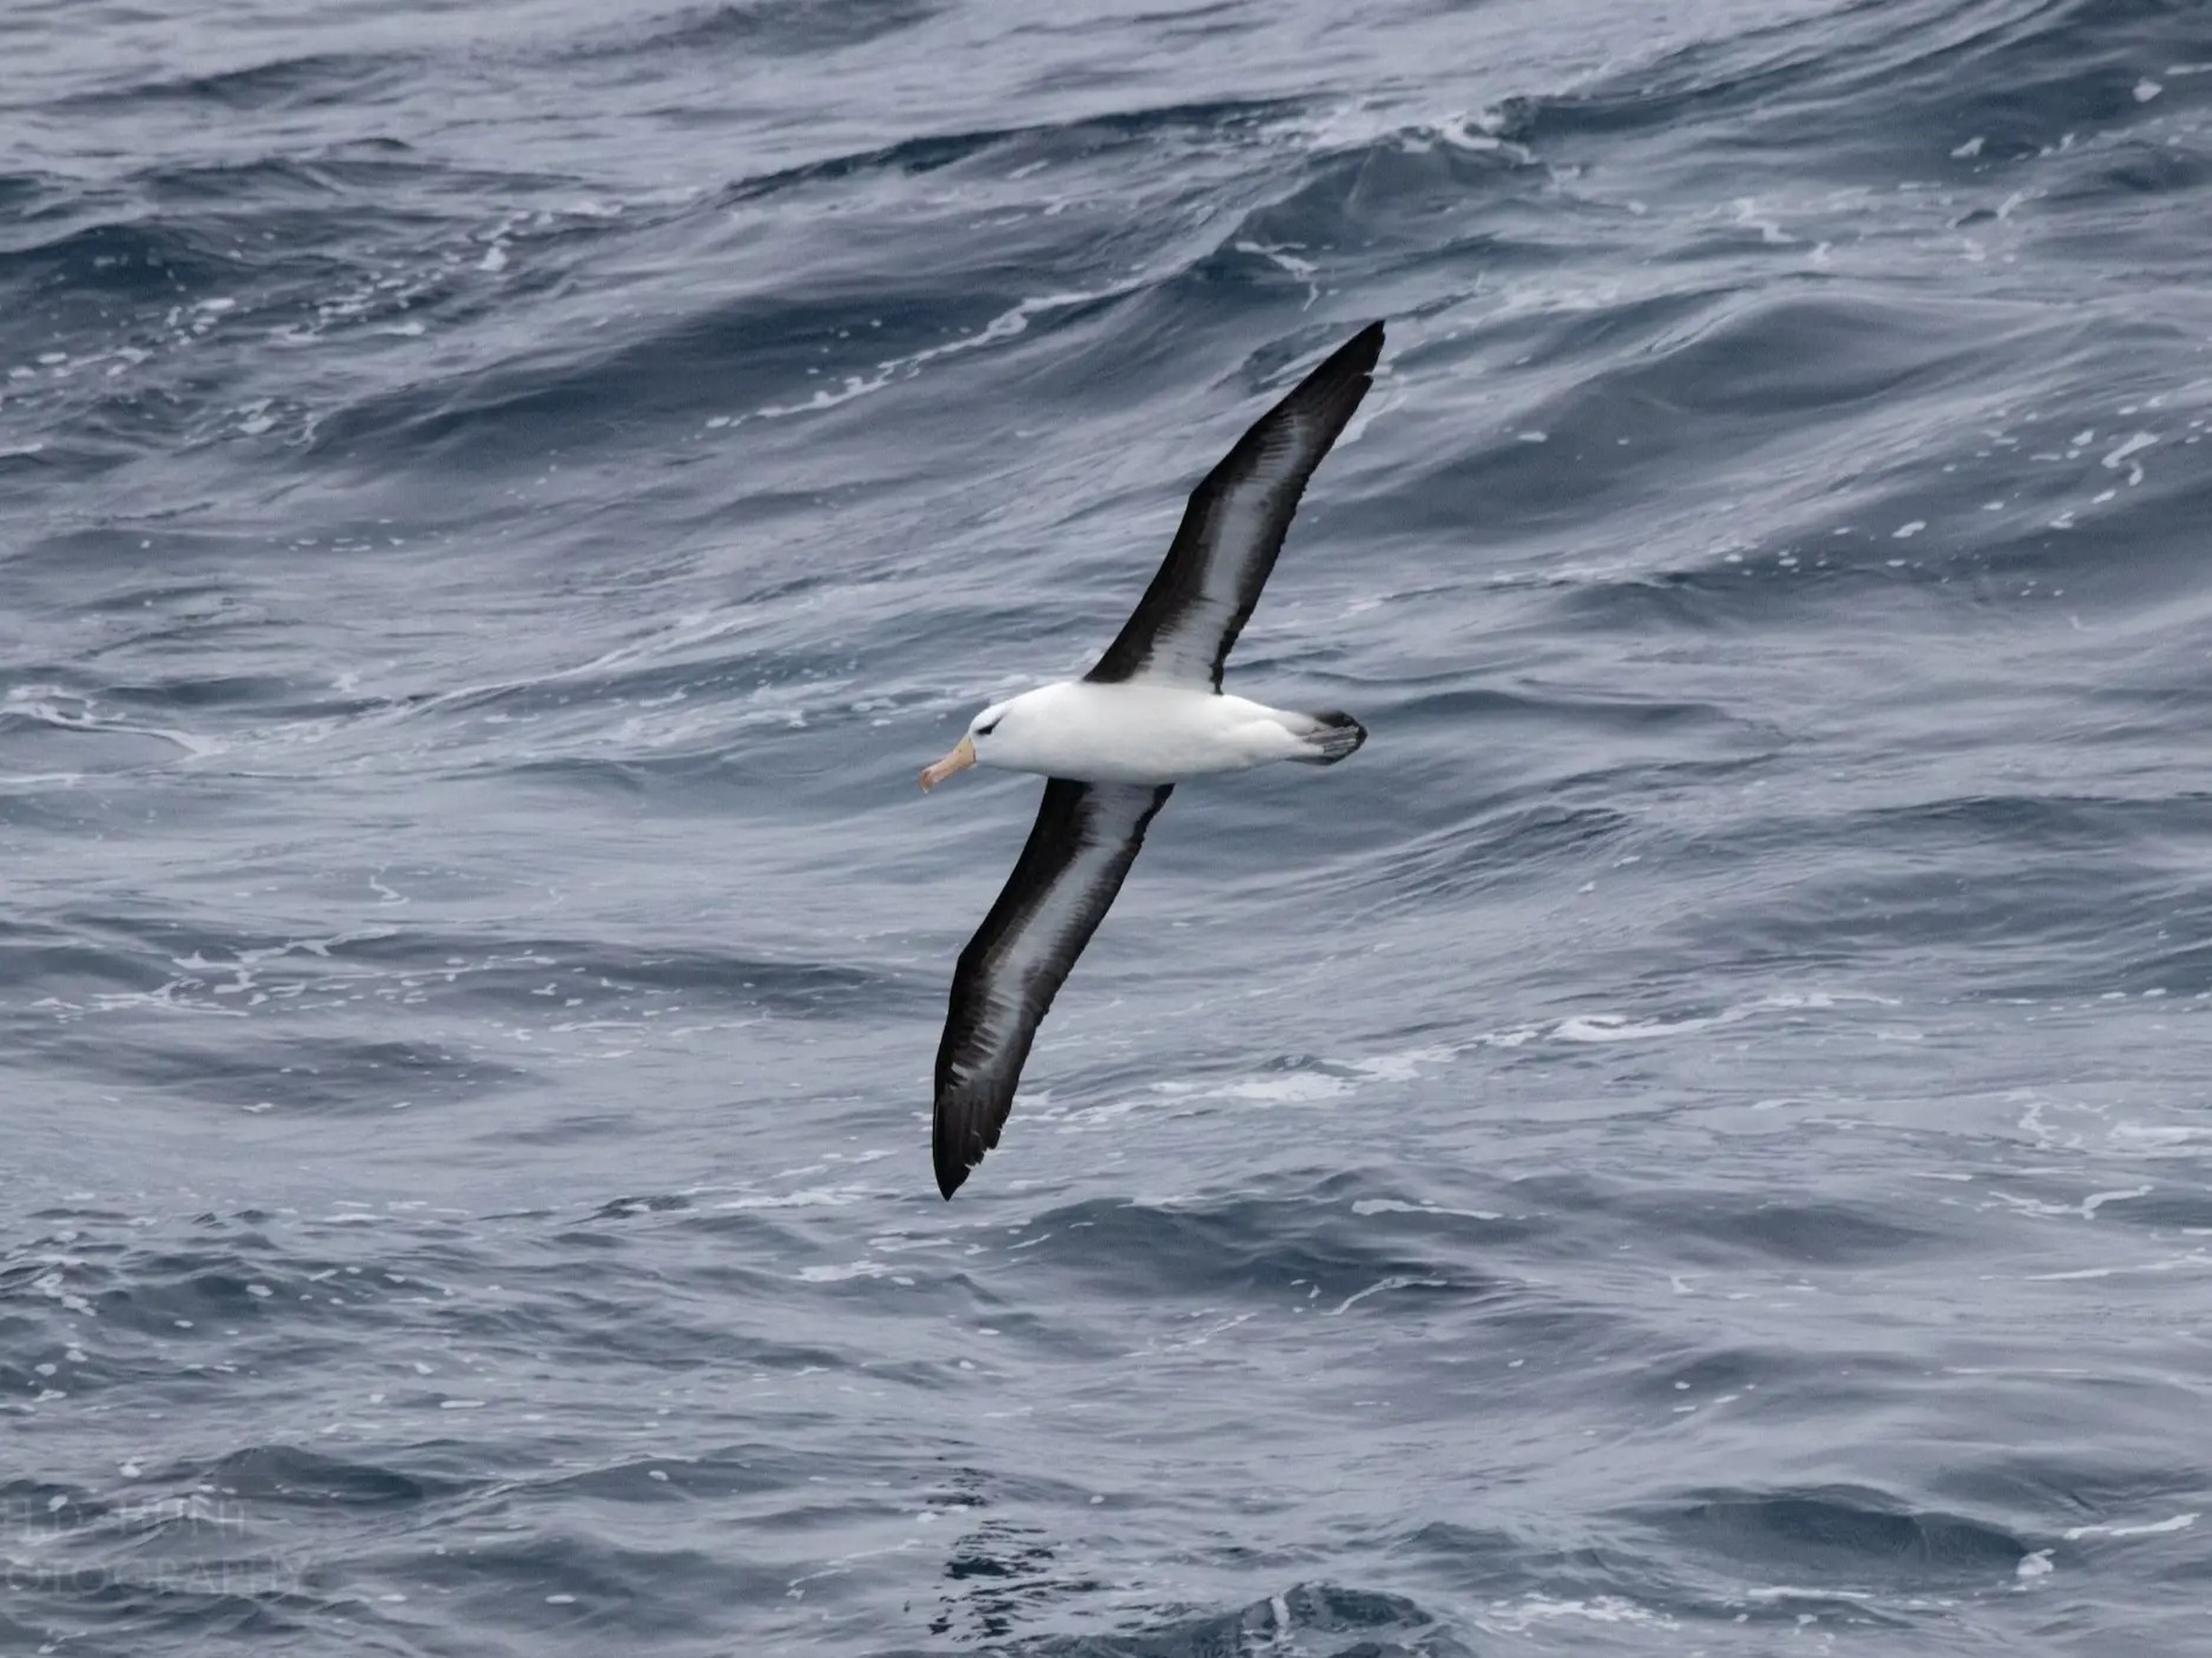 A Southern Ocean bird.